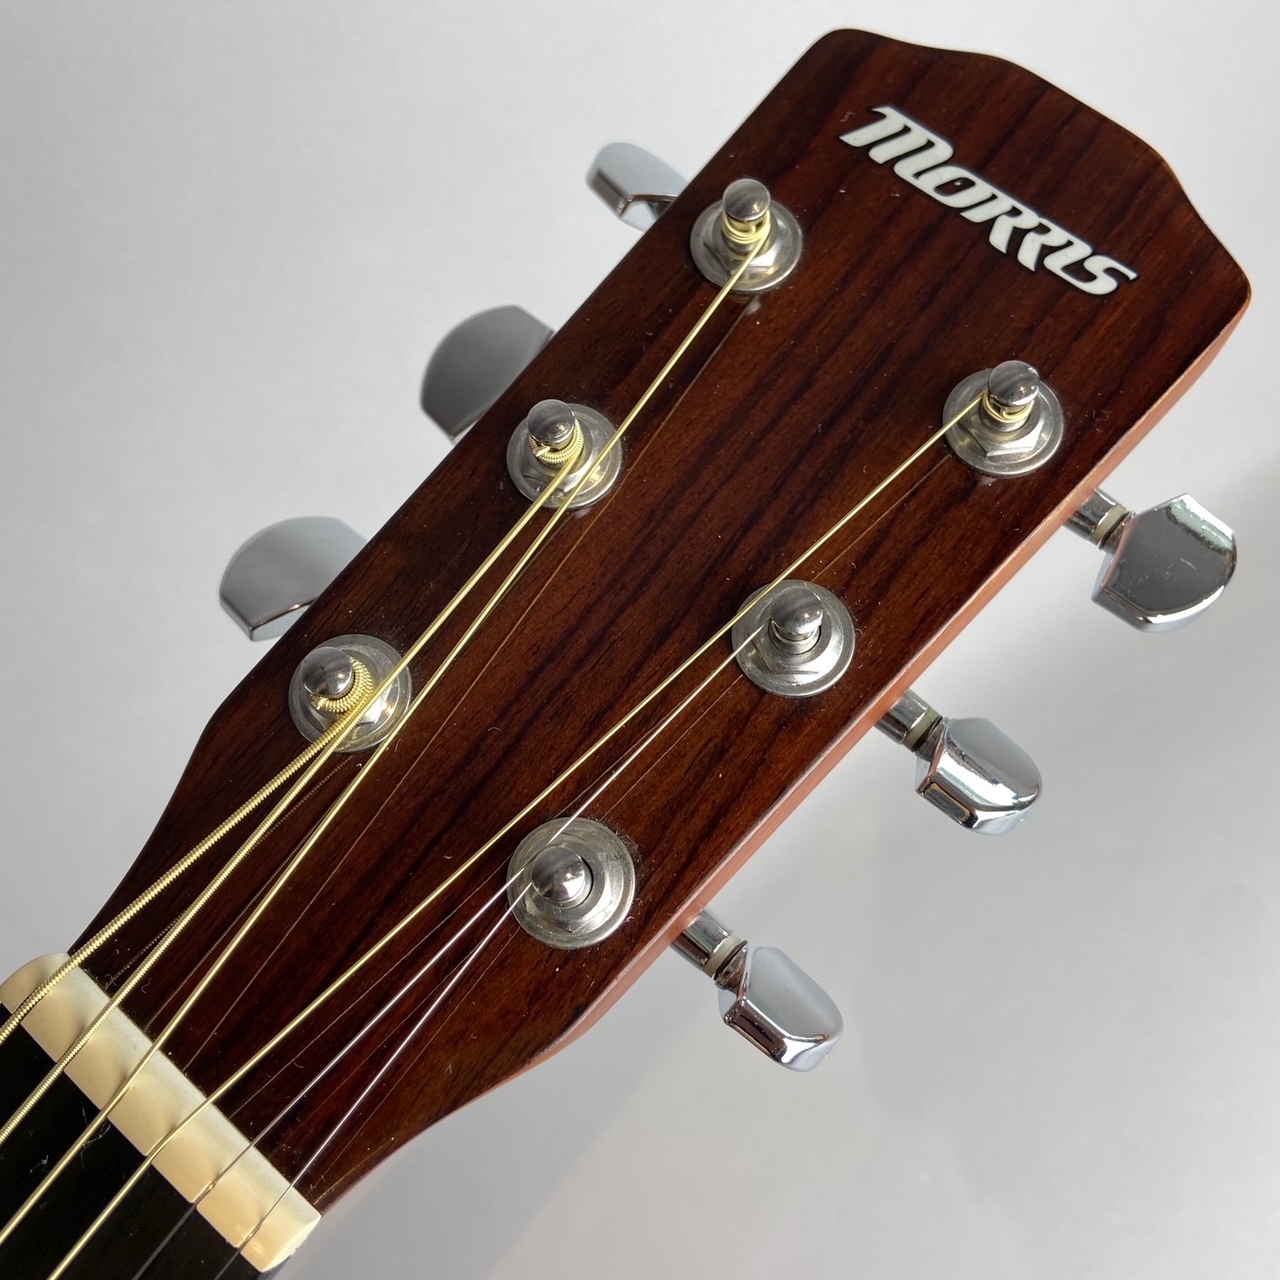 Morris F TS アコースティックギター中古楽器検索デジマート